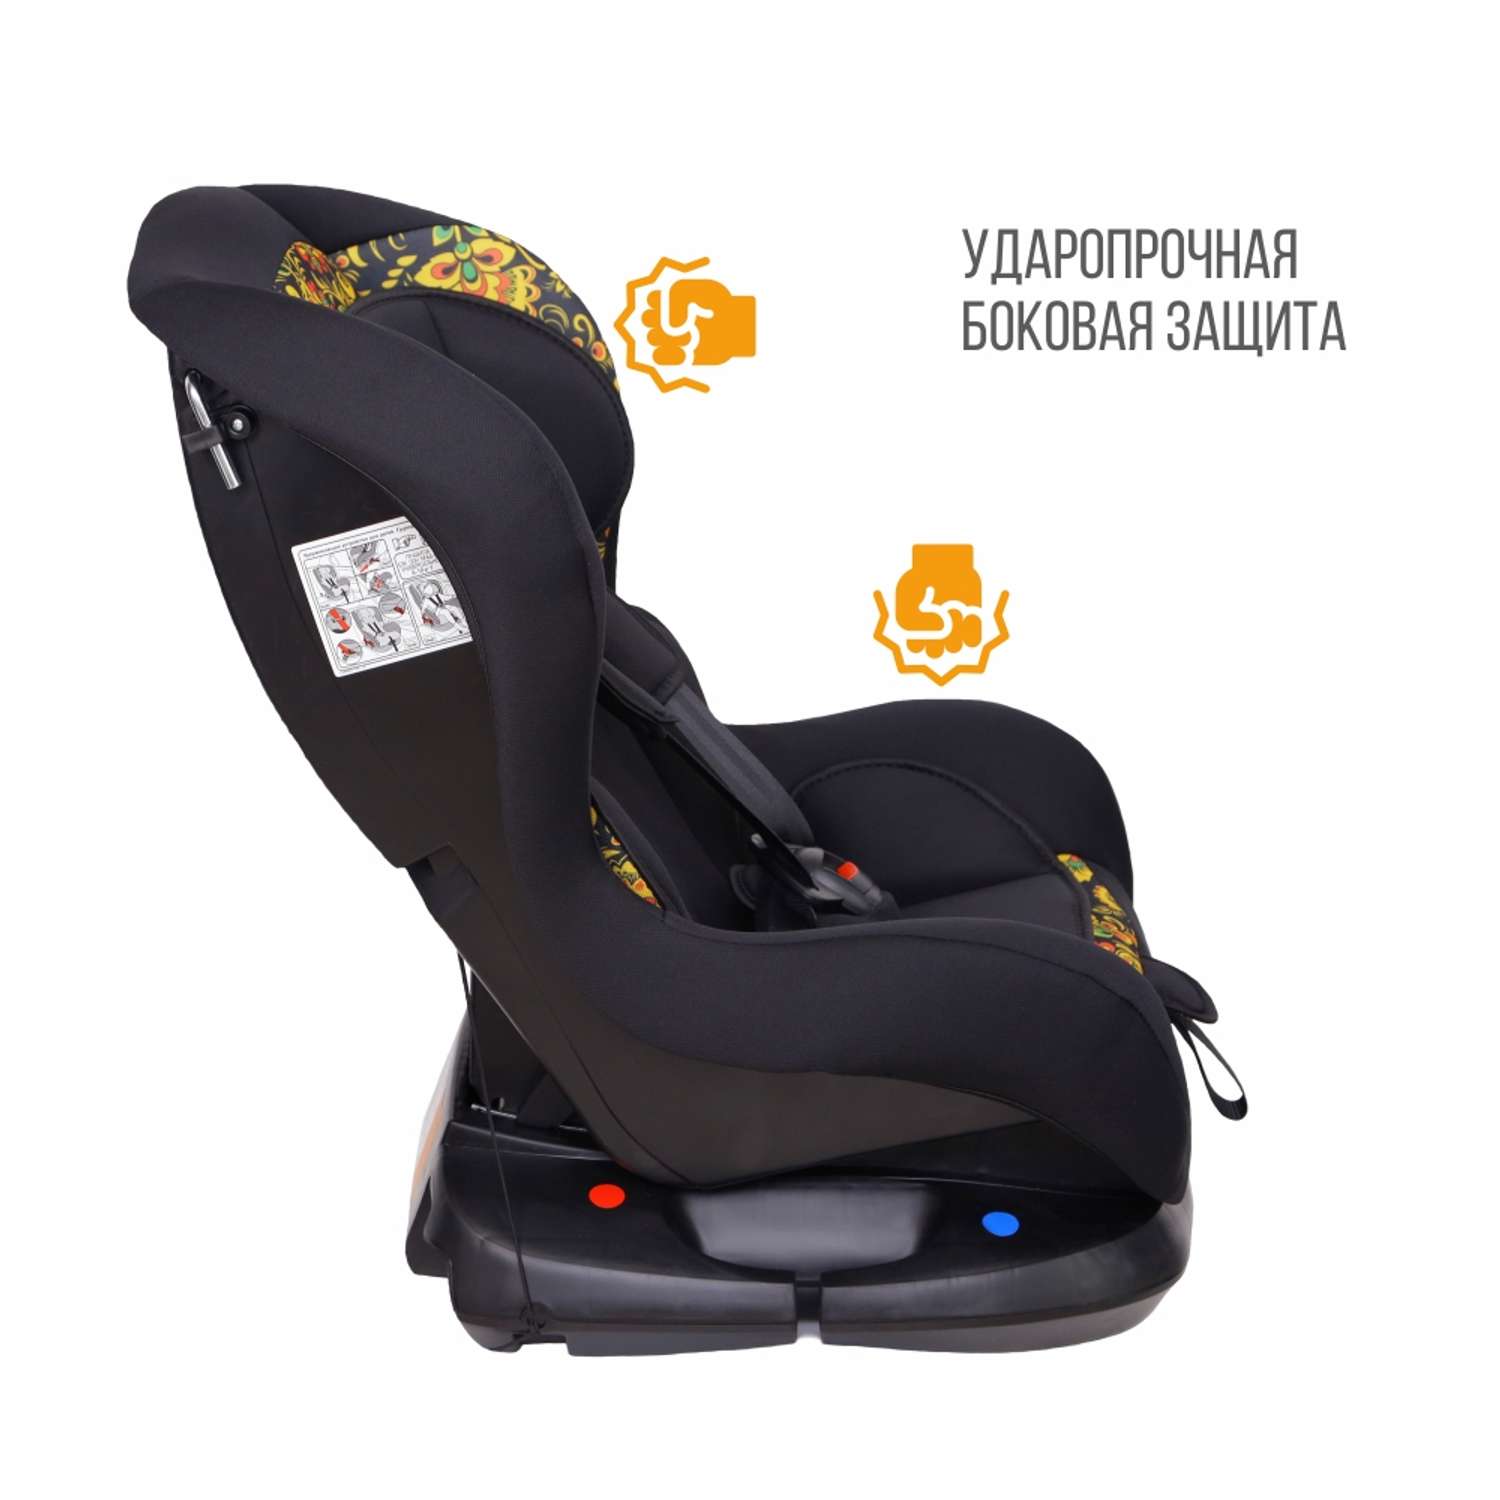 Автомобильное кресло ZLATEK УУД Zlatek Галеон Lux гр.0+/I фолк - фото 2